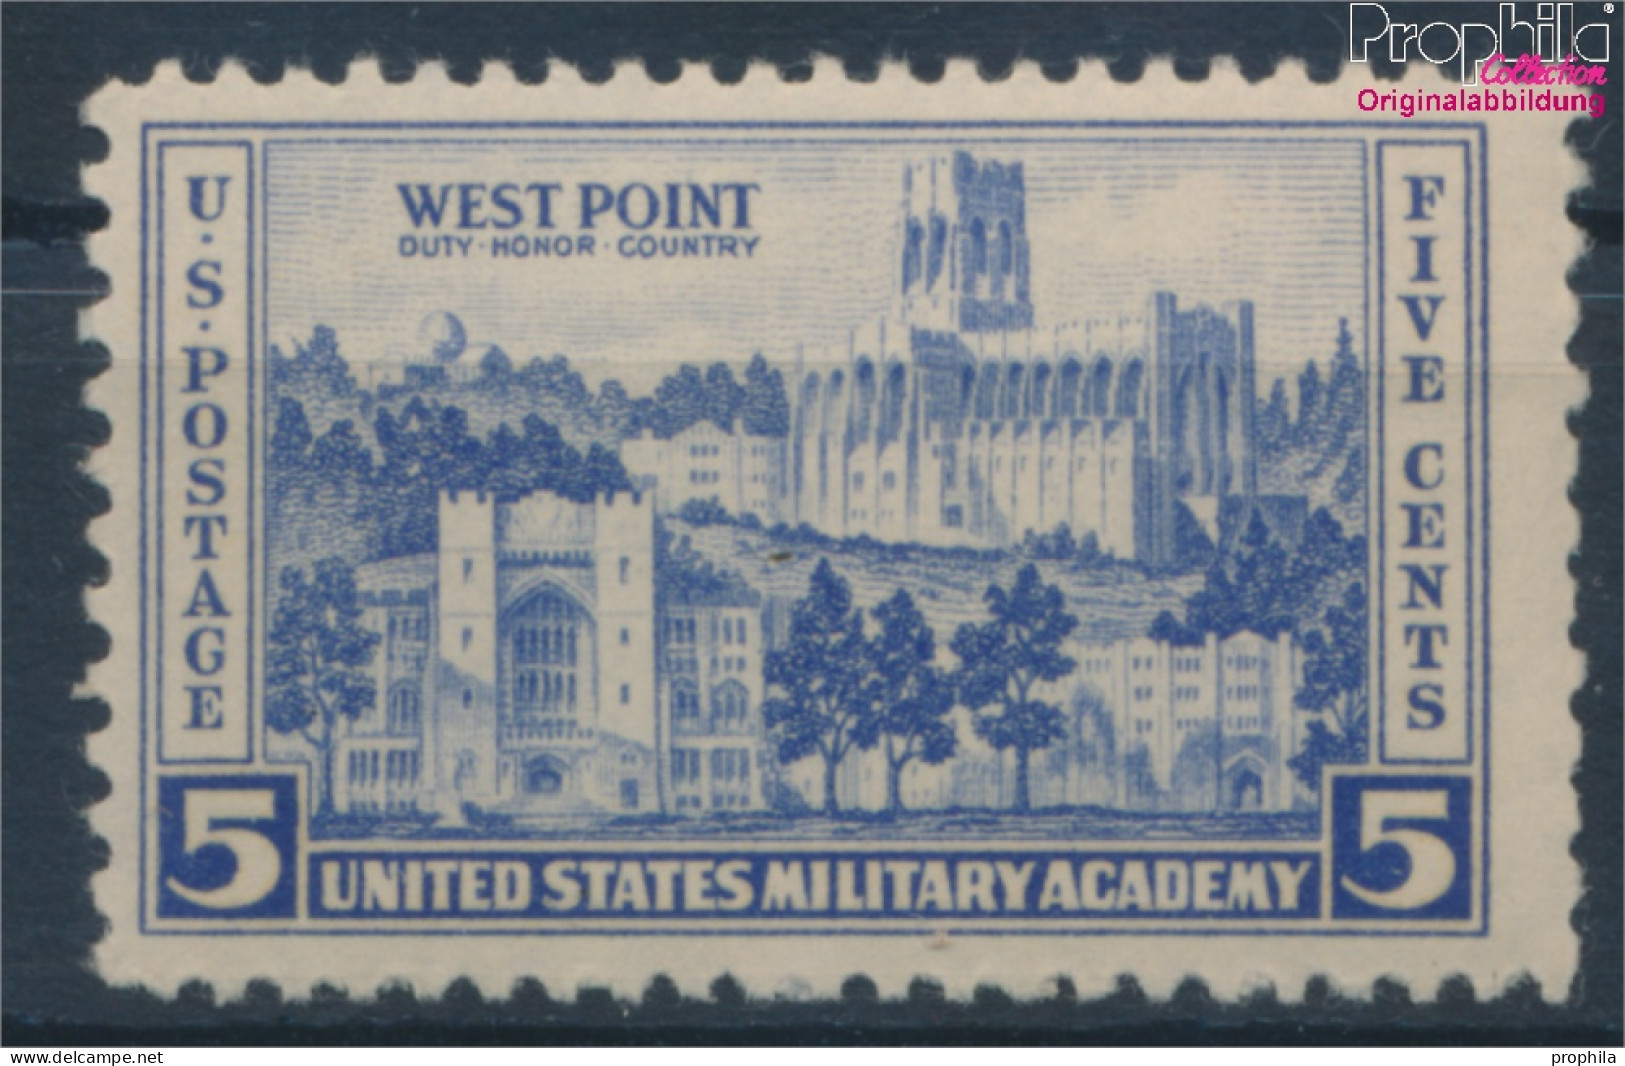 USA 394 Postfrisch 1936 Land- Und Seestreitkräfte (10336697 - Ungebraucht